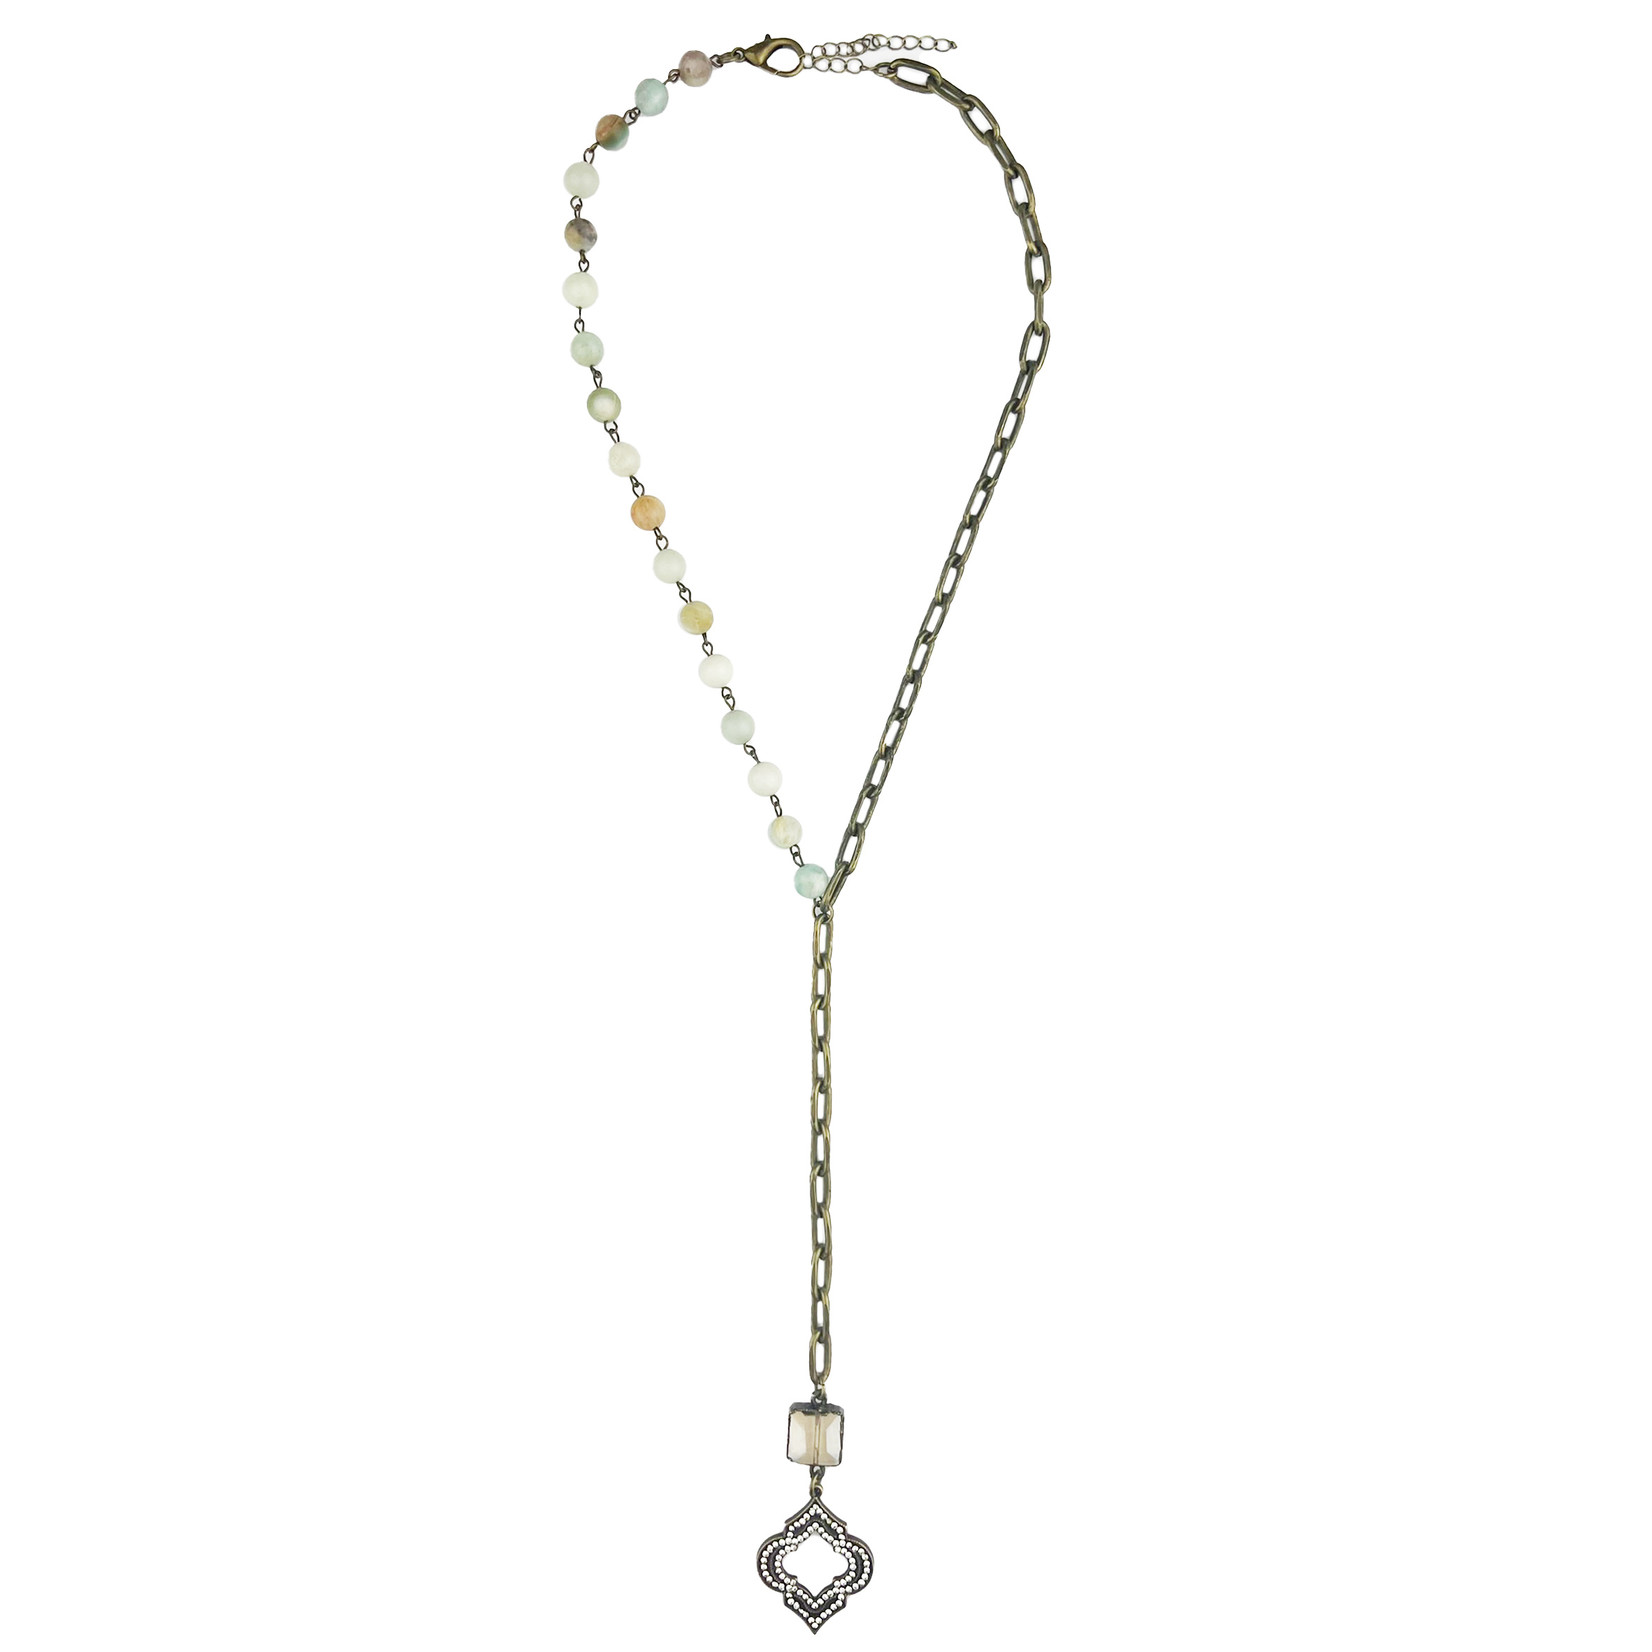 Chain & Beads Necklace 3pcs/$2ea